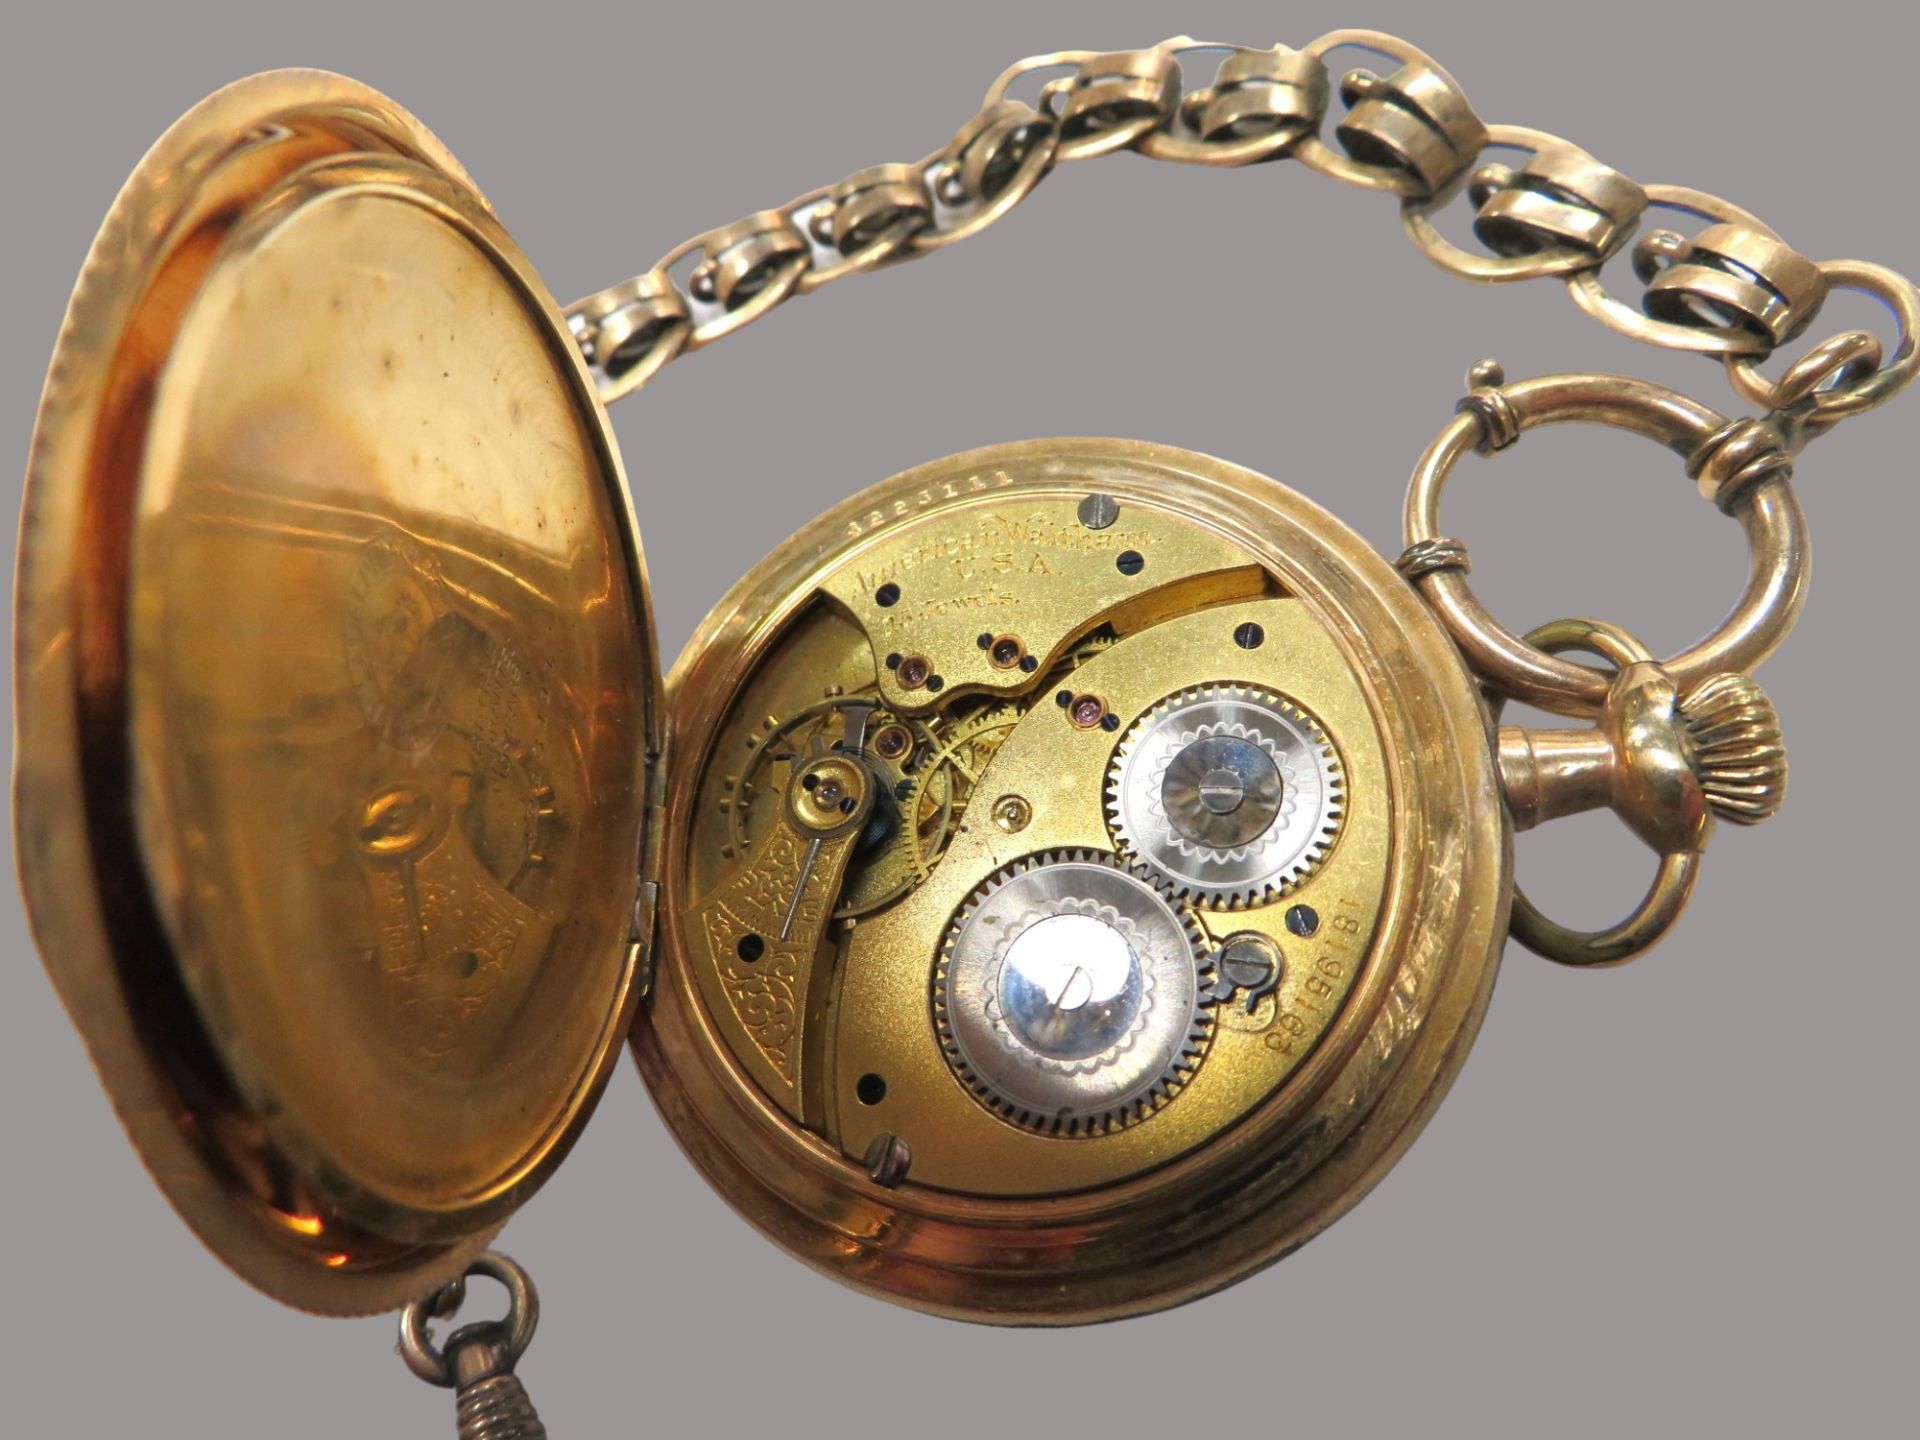 Taschenuhr an vergoldeter Uhrenkette, Savonette, USA/Waltham, Gehäuse vergoldet, Aufzug defekt (Unr - Image 3 of 3